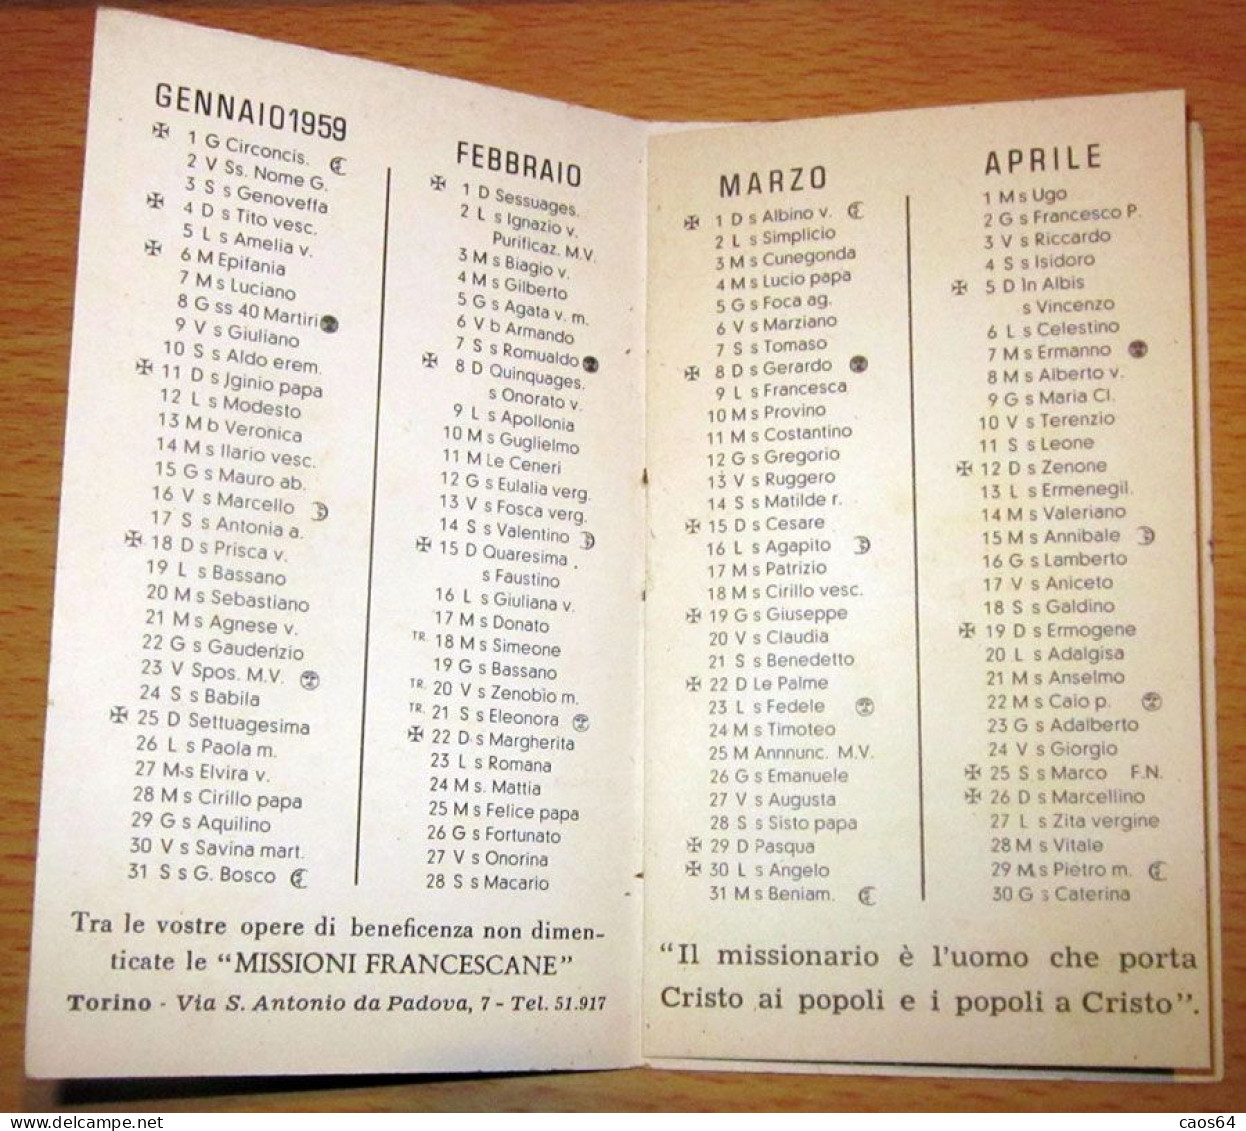 Missioni Francescane Piemontesi CALENDARIO TASCABILE 1959 - Petit Format : 1941-60